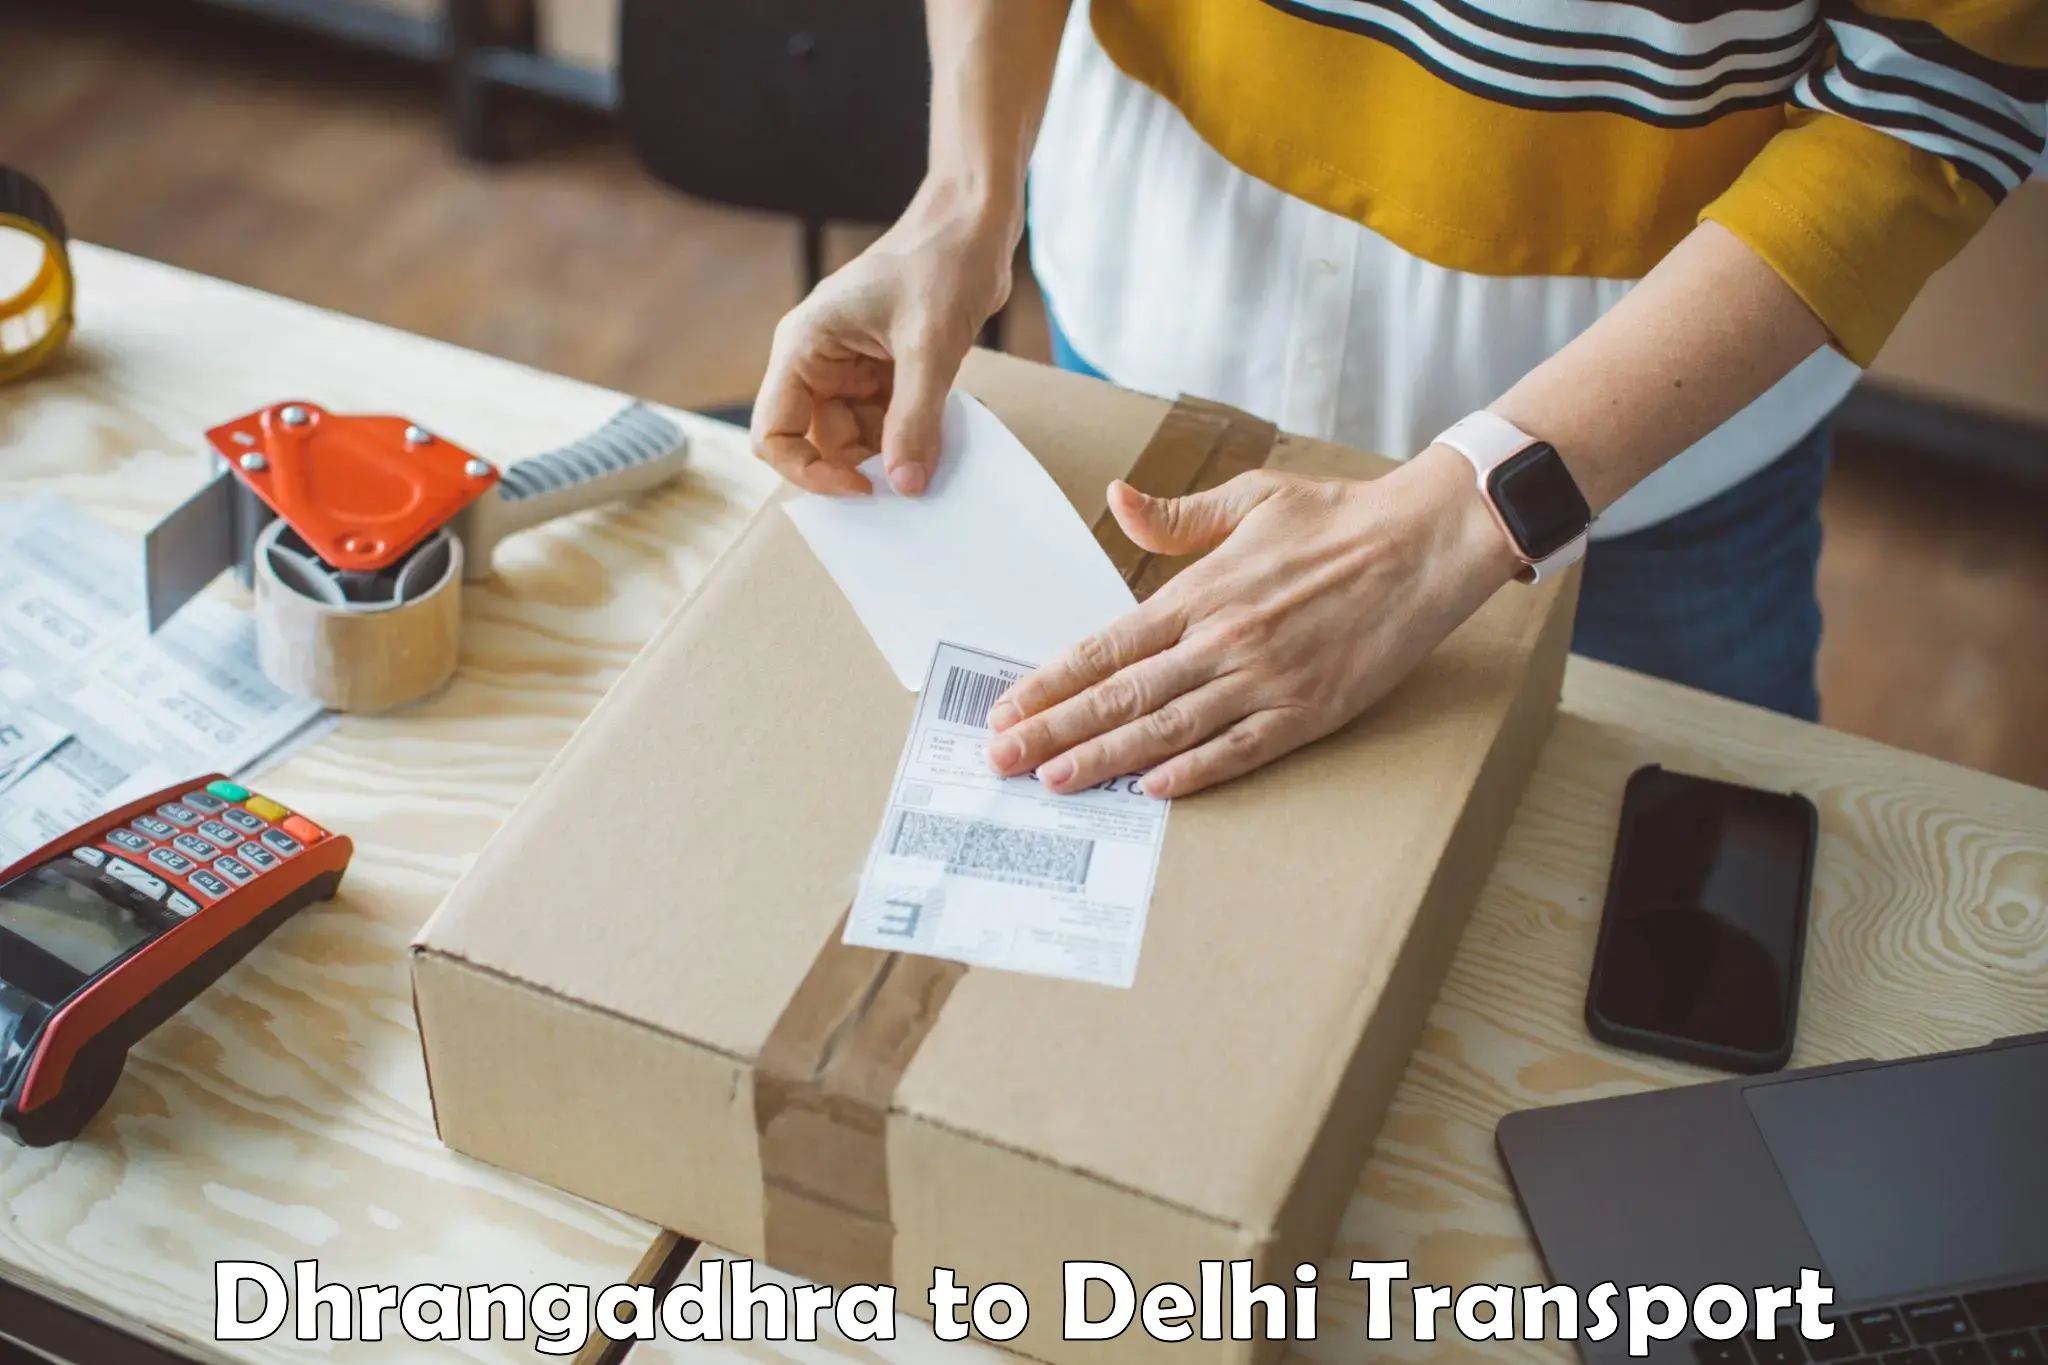 Commercial transport service Dhrangadhra to Delhi